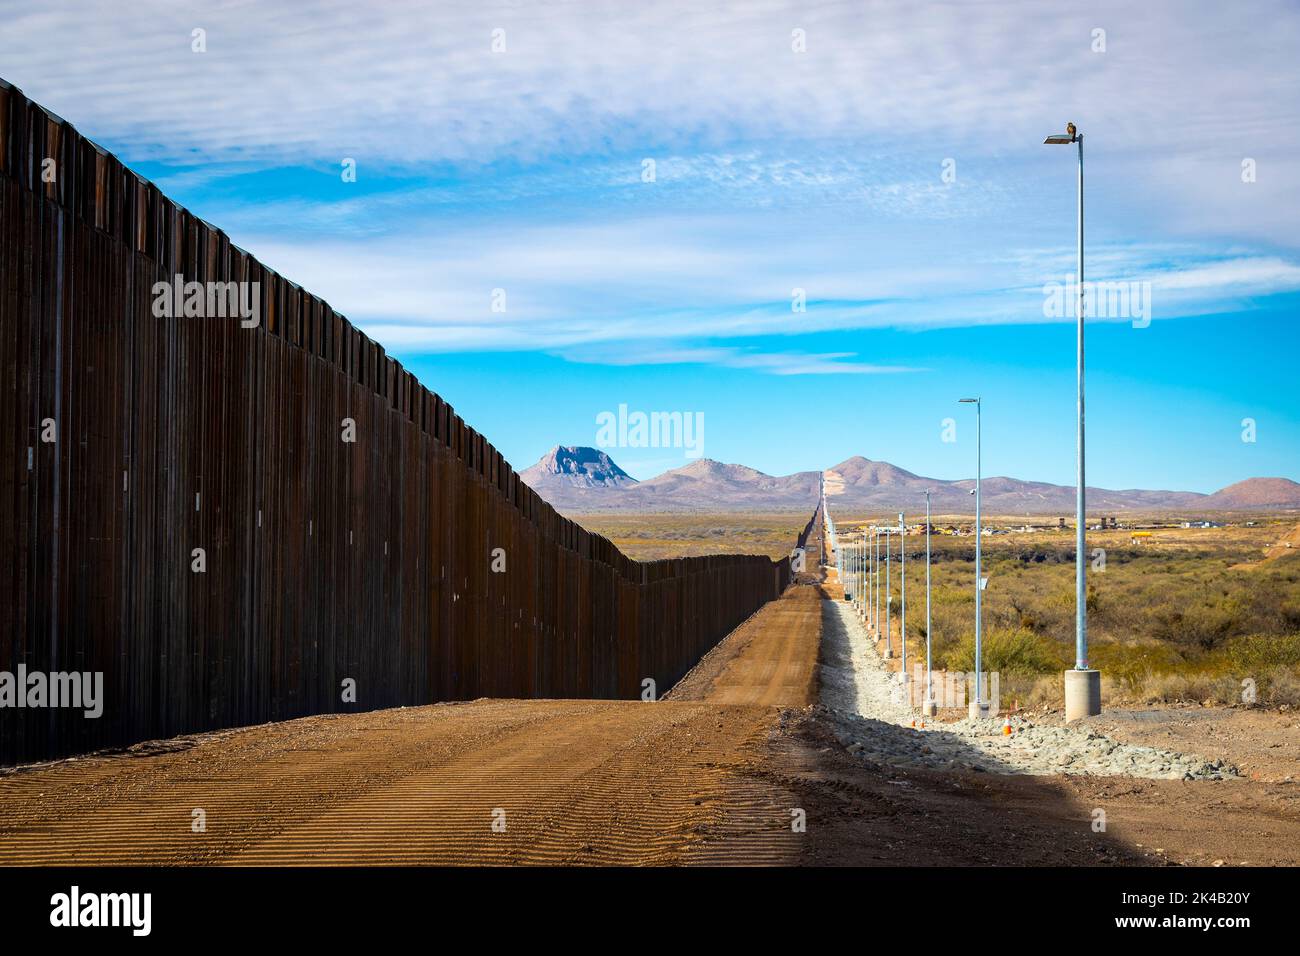 Kürzlich wurden am 14. Dezember 2020 Paneele beim neuen Grenzwandsystem-Projekt östlich von Douglas, Arizona, errichtet. Das Grenzwandsystem umfasst eine Kombination von Infrastruktur einschließlich neuer Allwetterzugangsstraßen. Foto von Jerry Glaser. Stockfoto